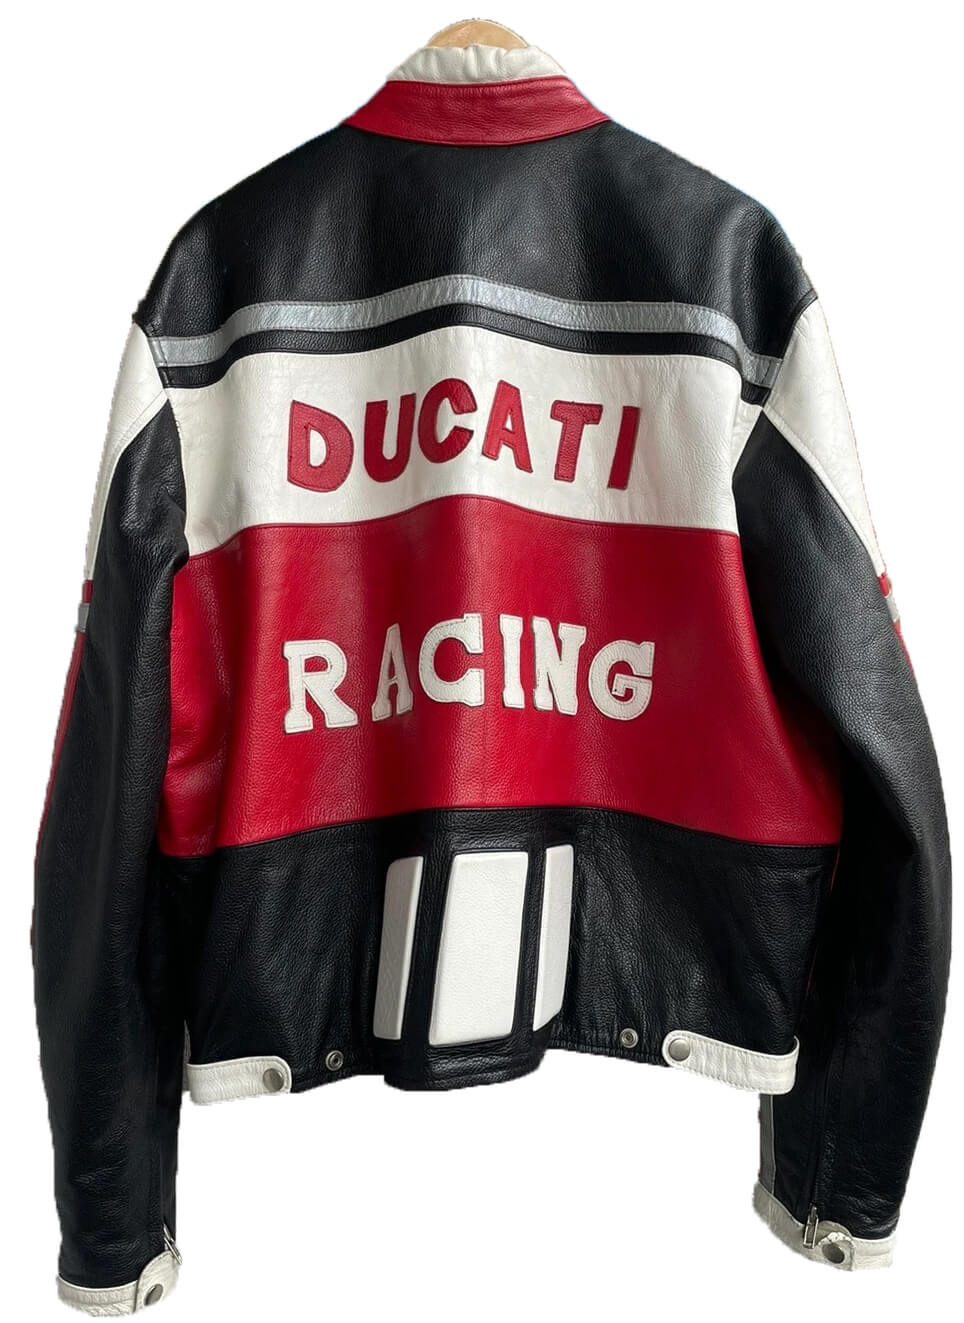 Vintage Ducati Motorcycle Racing Leather Jacket